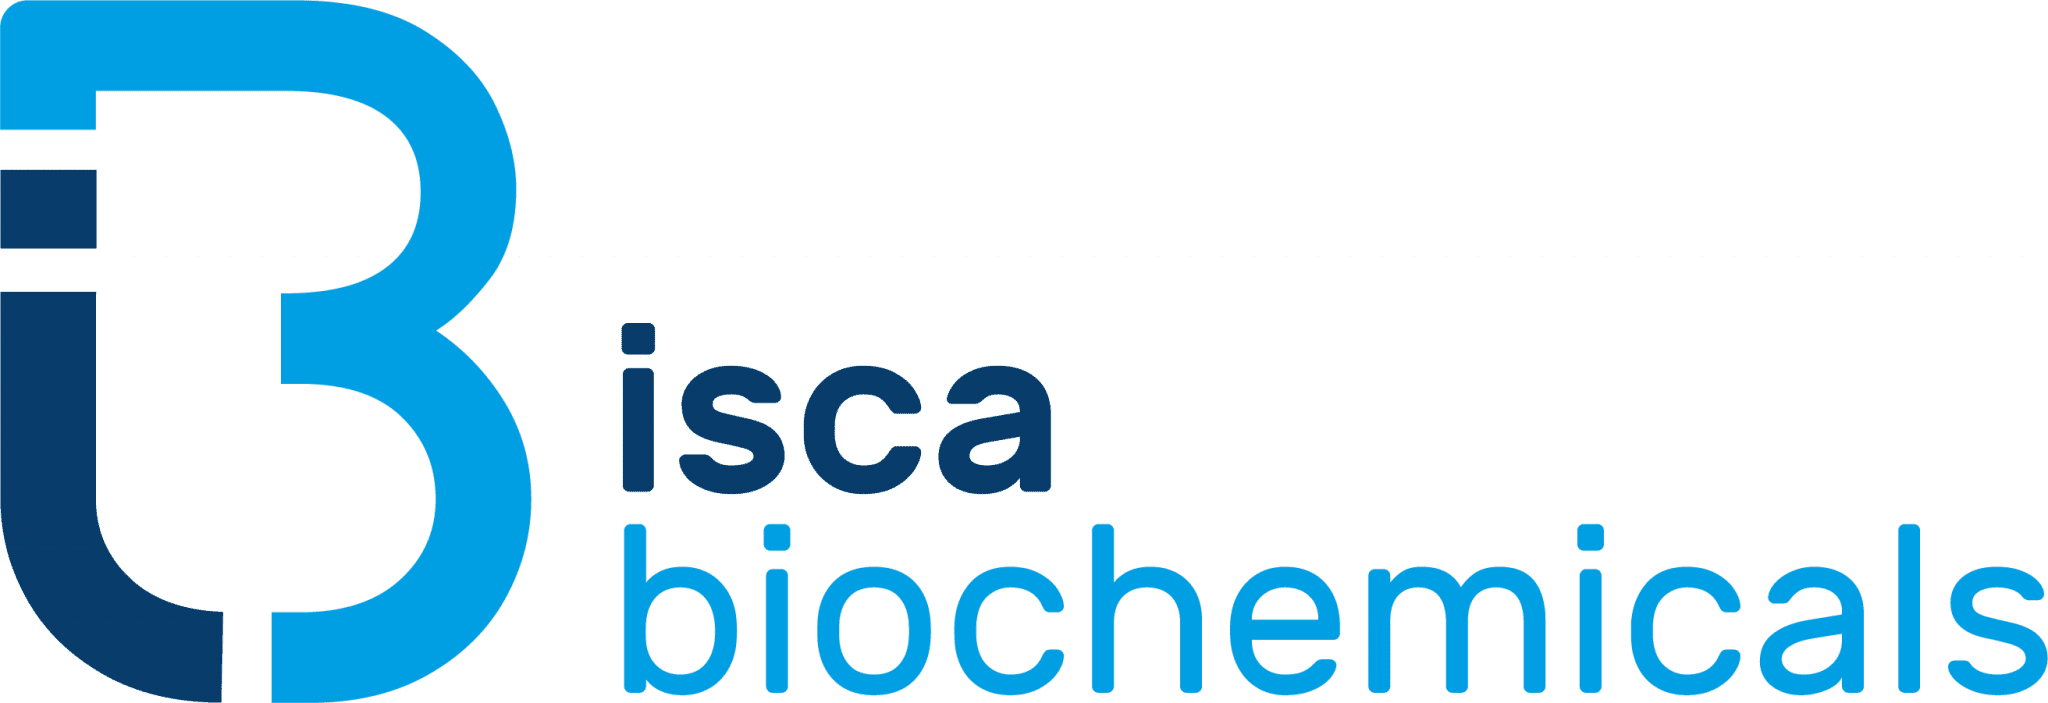 Isca Biochemicals